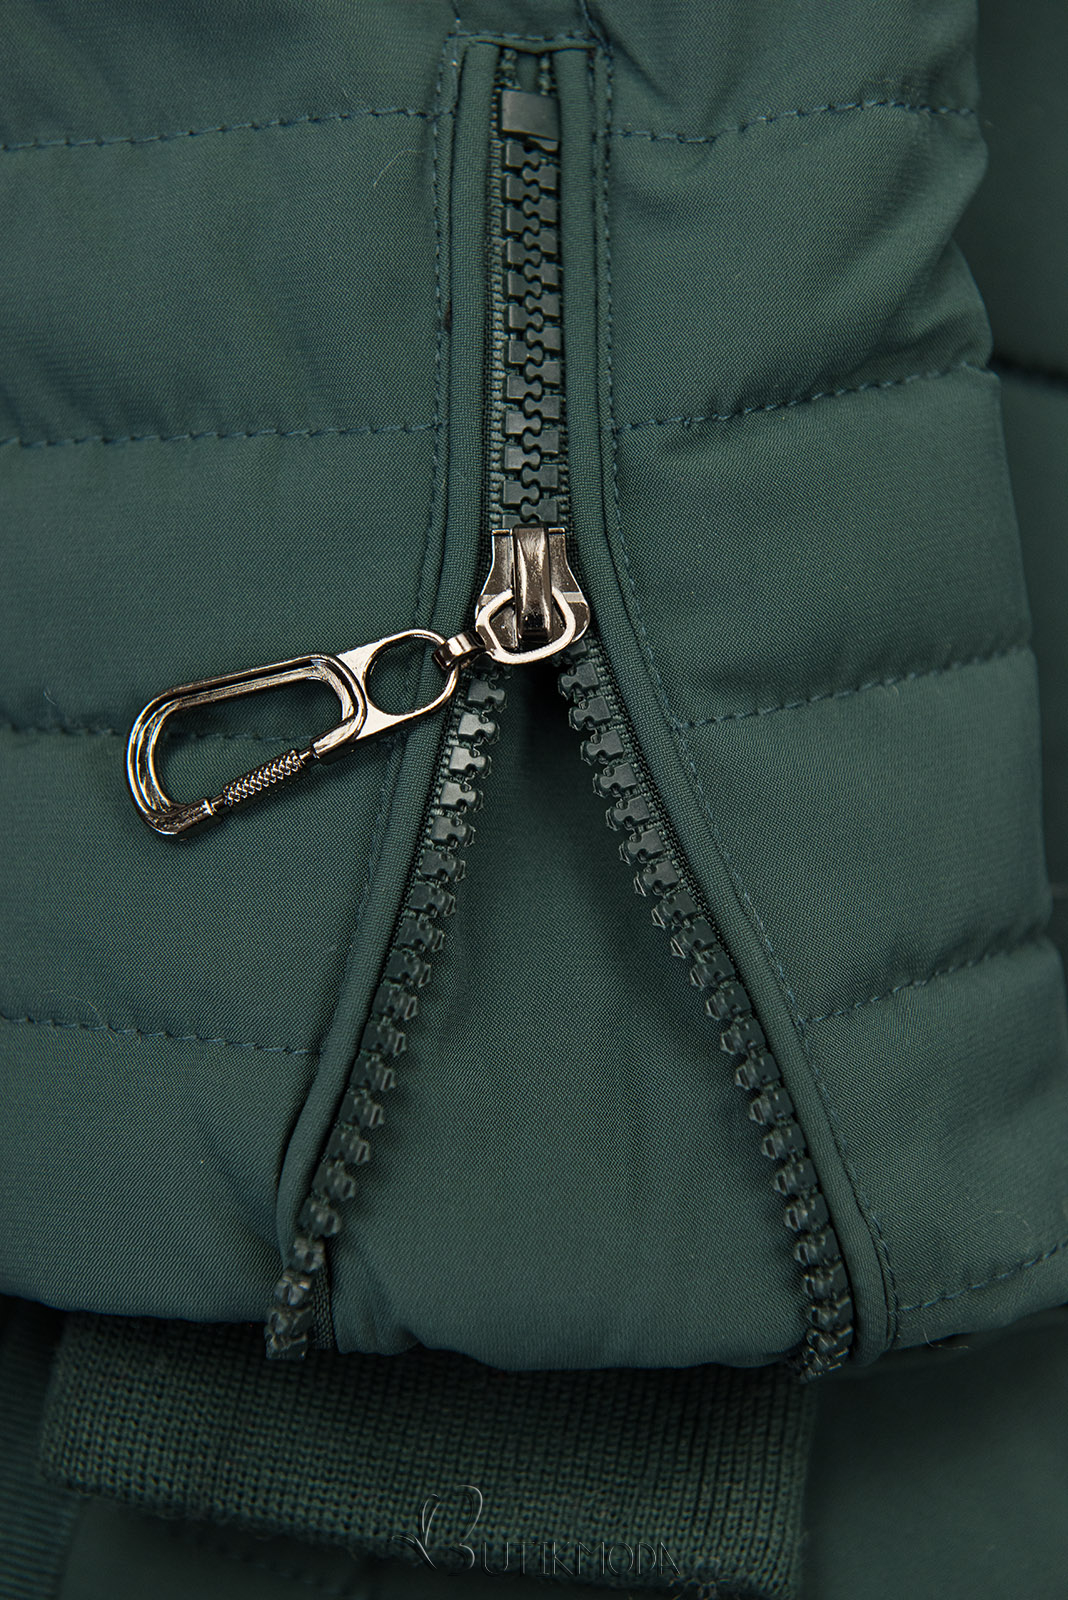 Sötétzöld színű steppelt téli kabát kapucnival